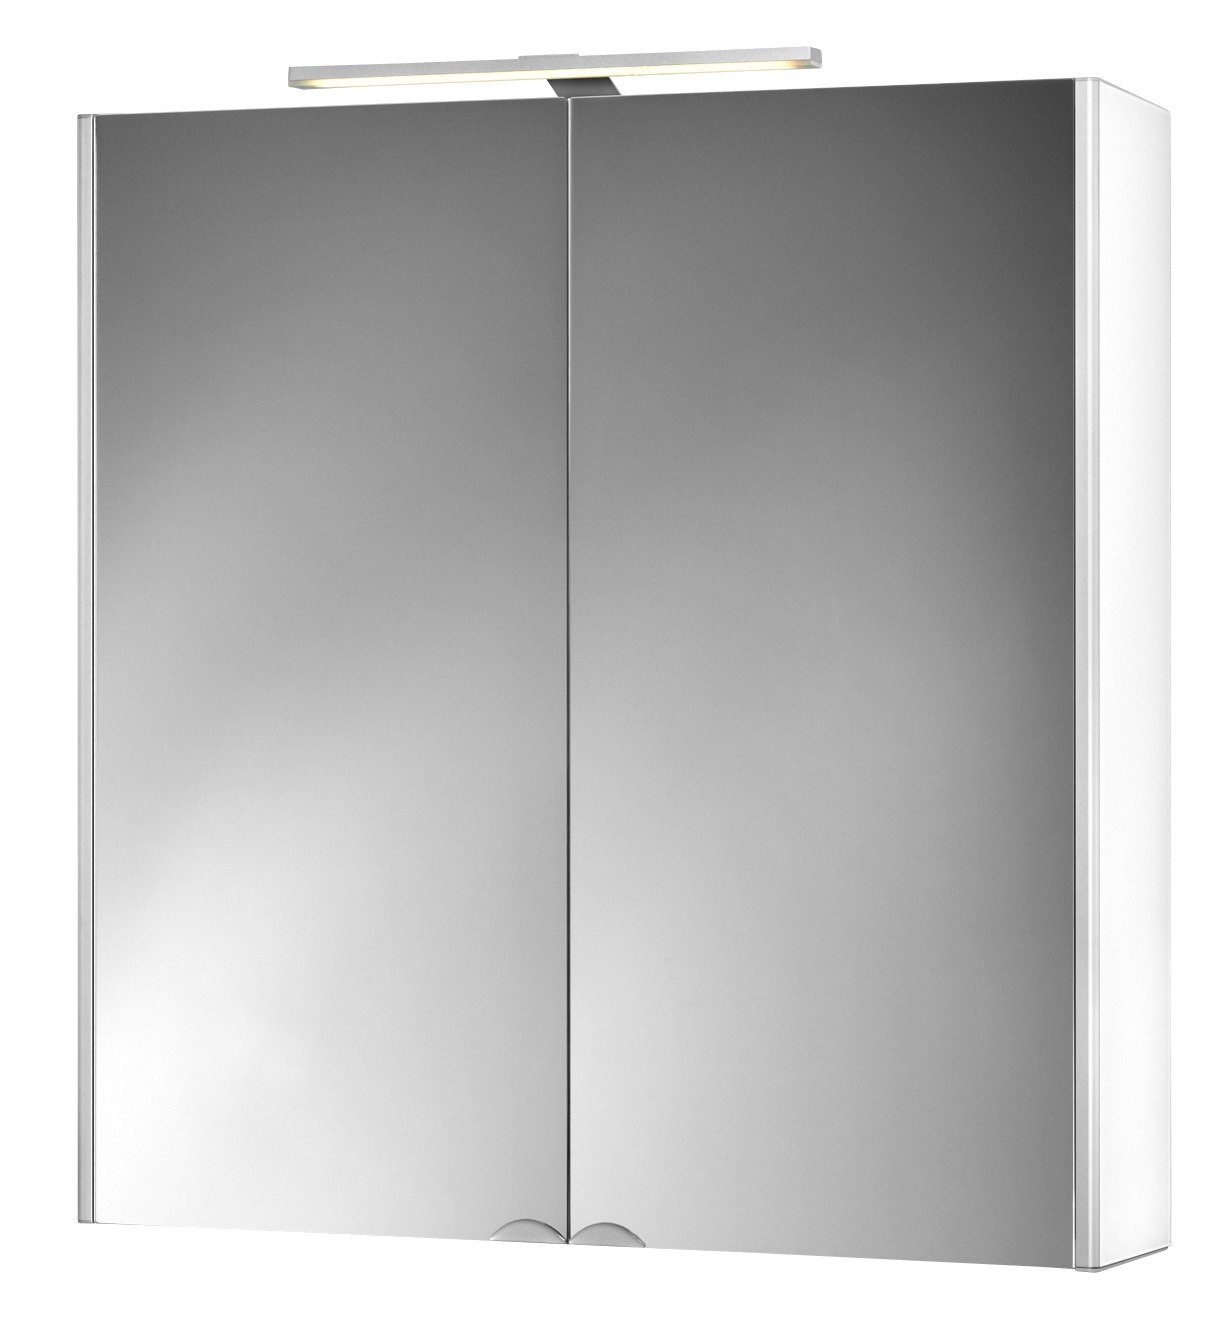 jokey Spiegelschrank Dekor Alu LED 65,5 cm Breite aluminium/weiß | aluminium/weiß | Spiegelschränke